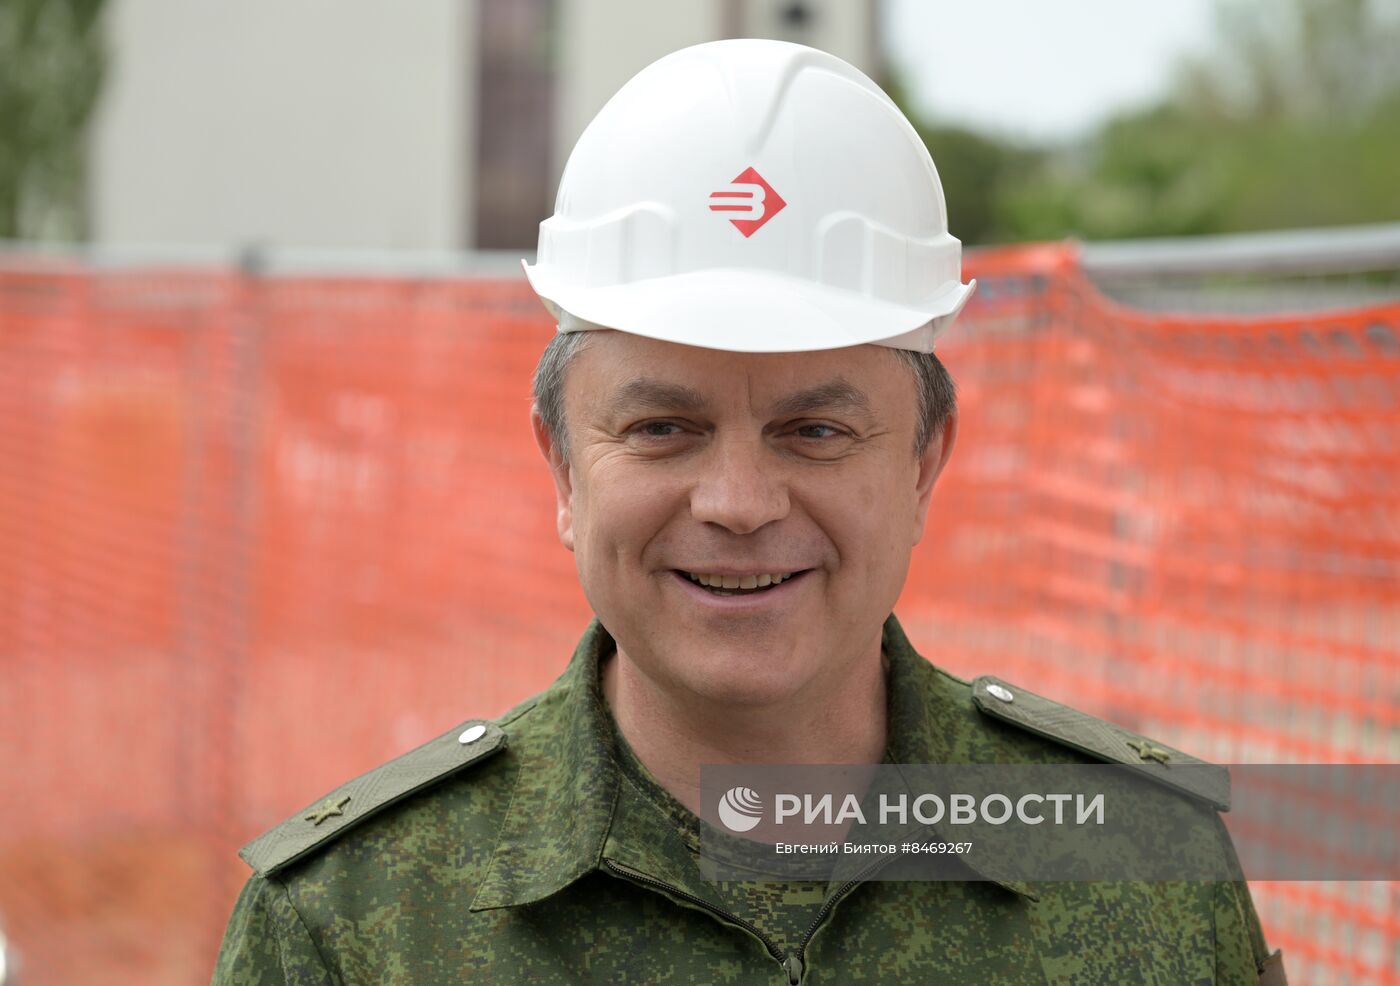 Врио главы ЛНР Л. Пасечник проинспектировал объект жилищного строительства в Луганске